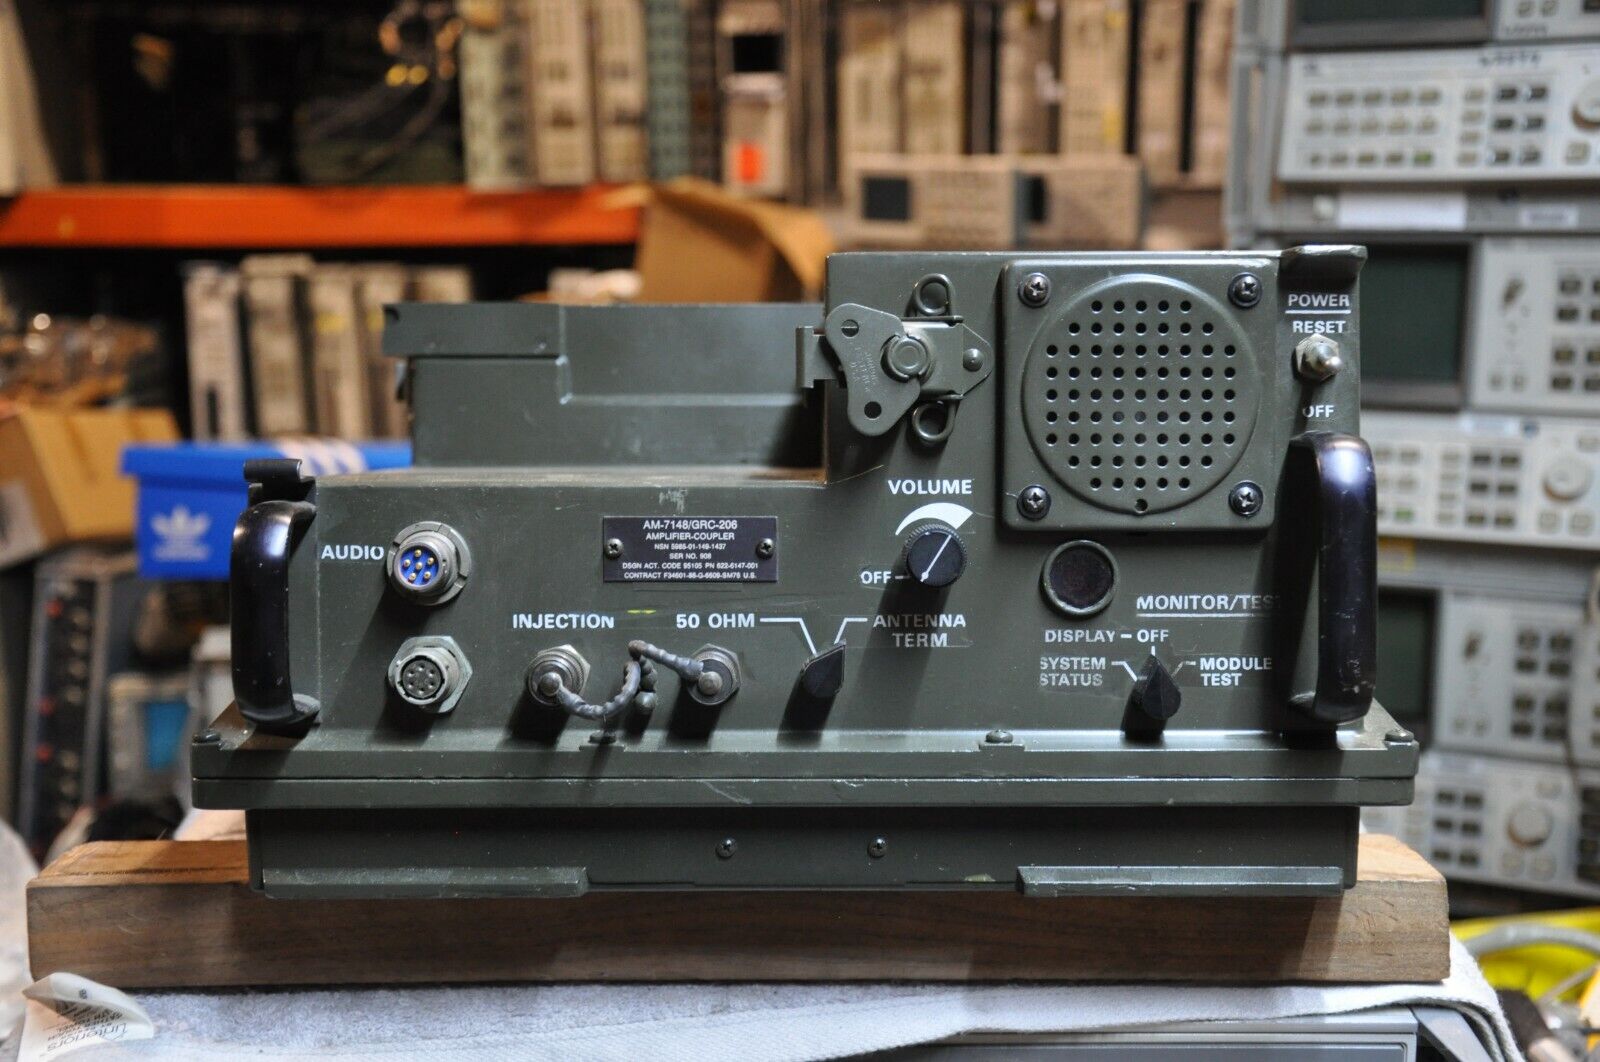 Magnavox AM-7148/GRC-206 HF Power Amplifier/Coupler